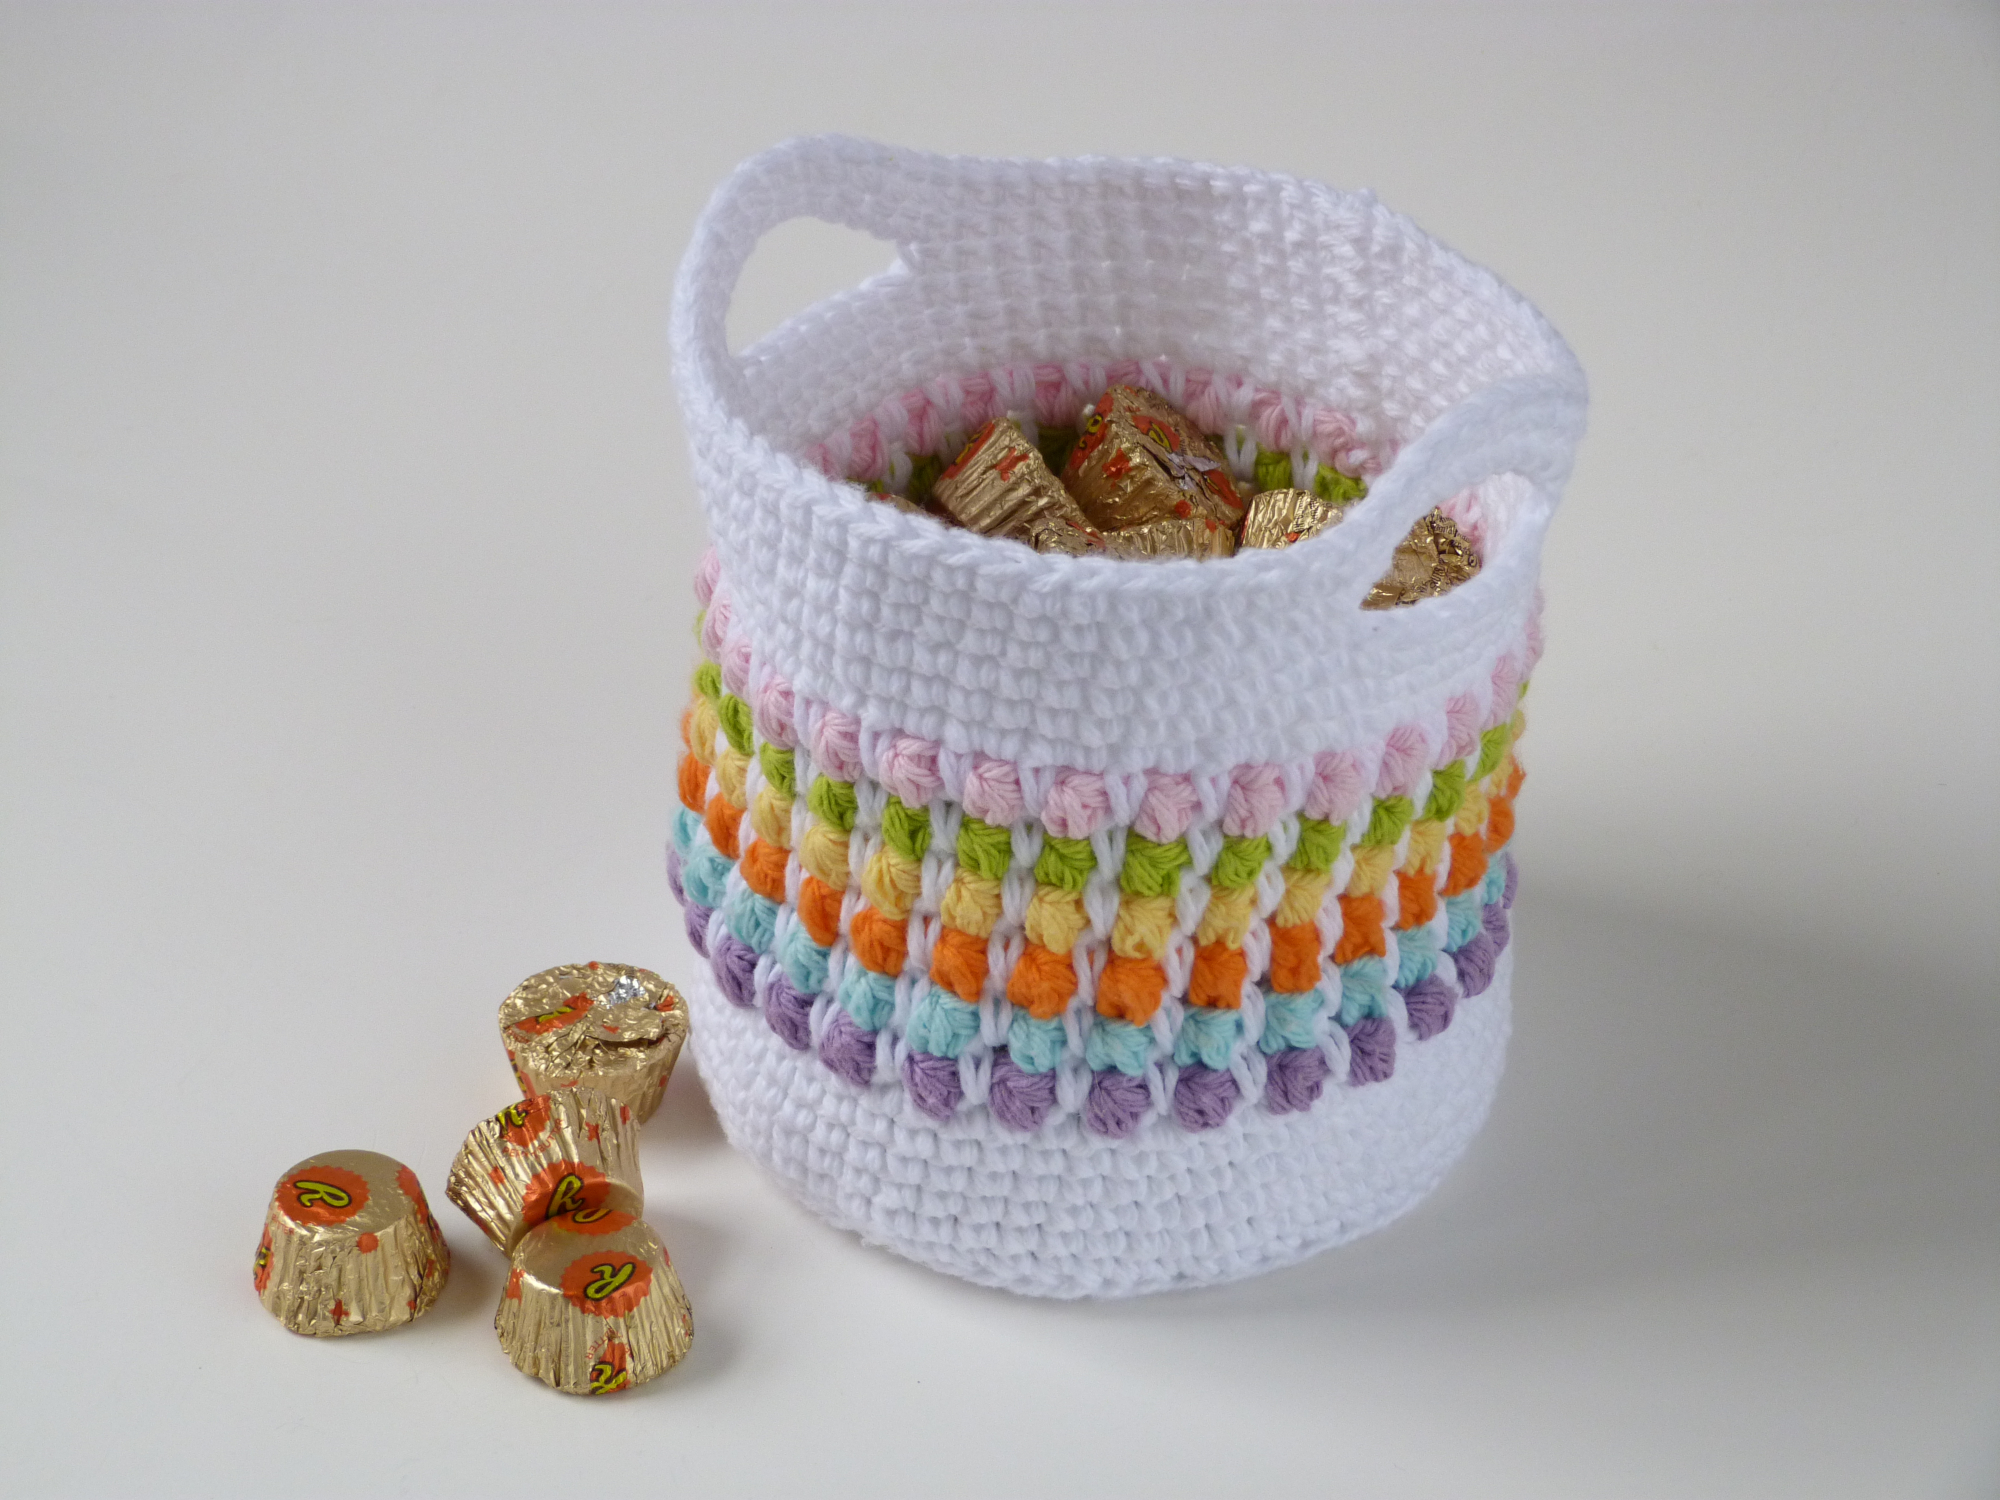 Crochet Spot » Free Crochet Patterns - Crochet Patterns, Tutorials and News